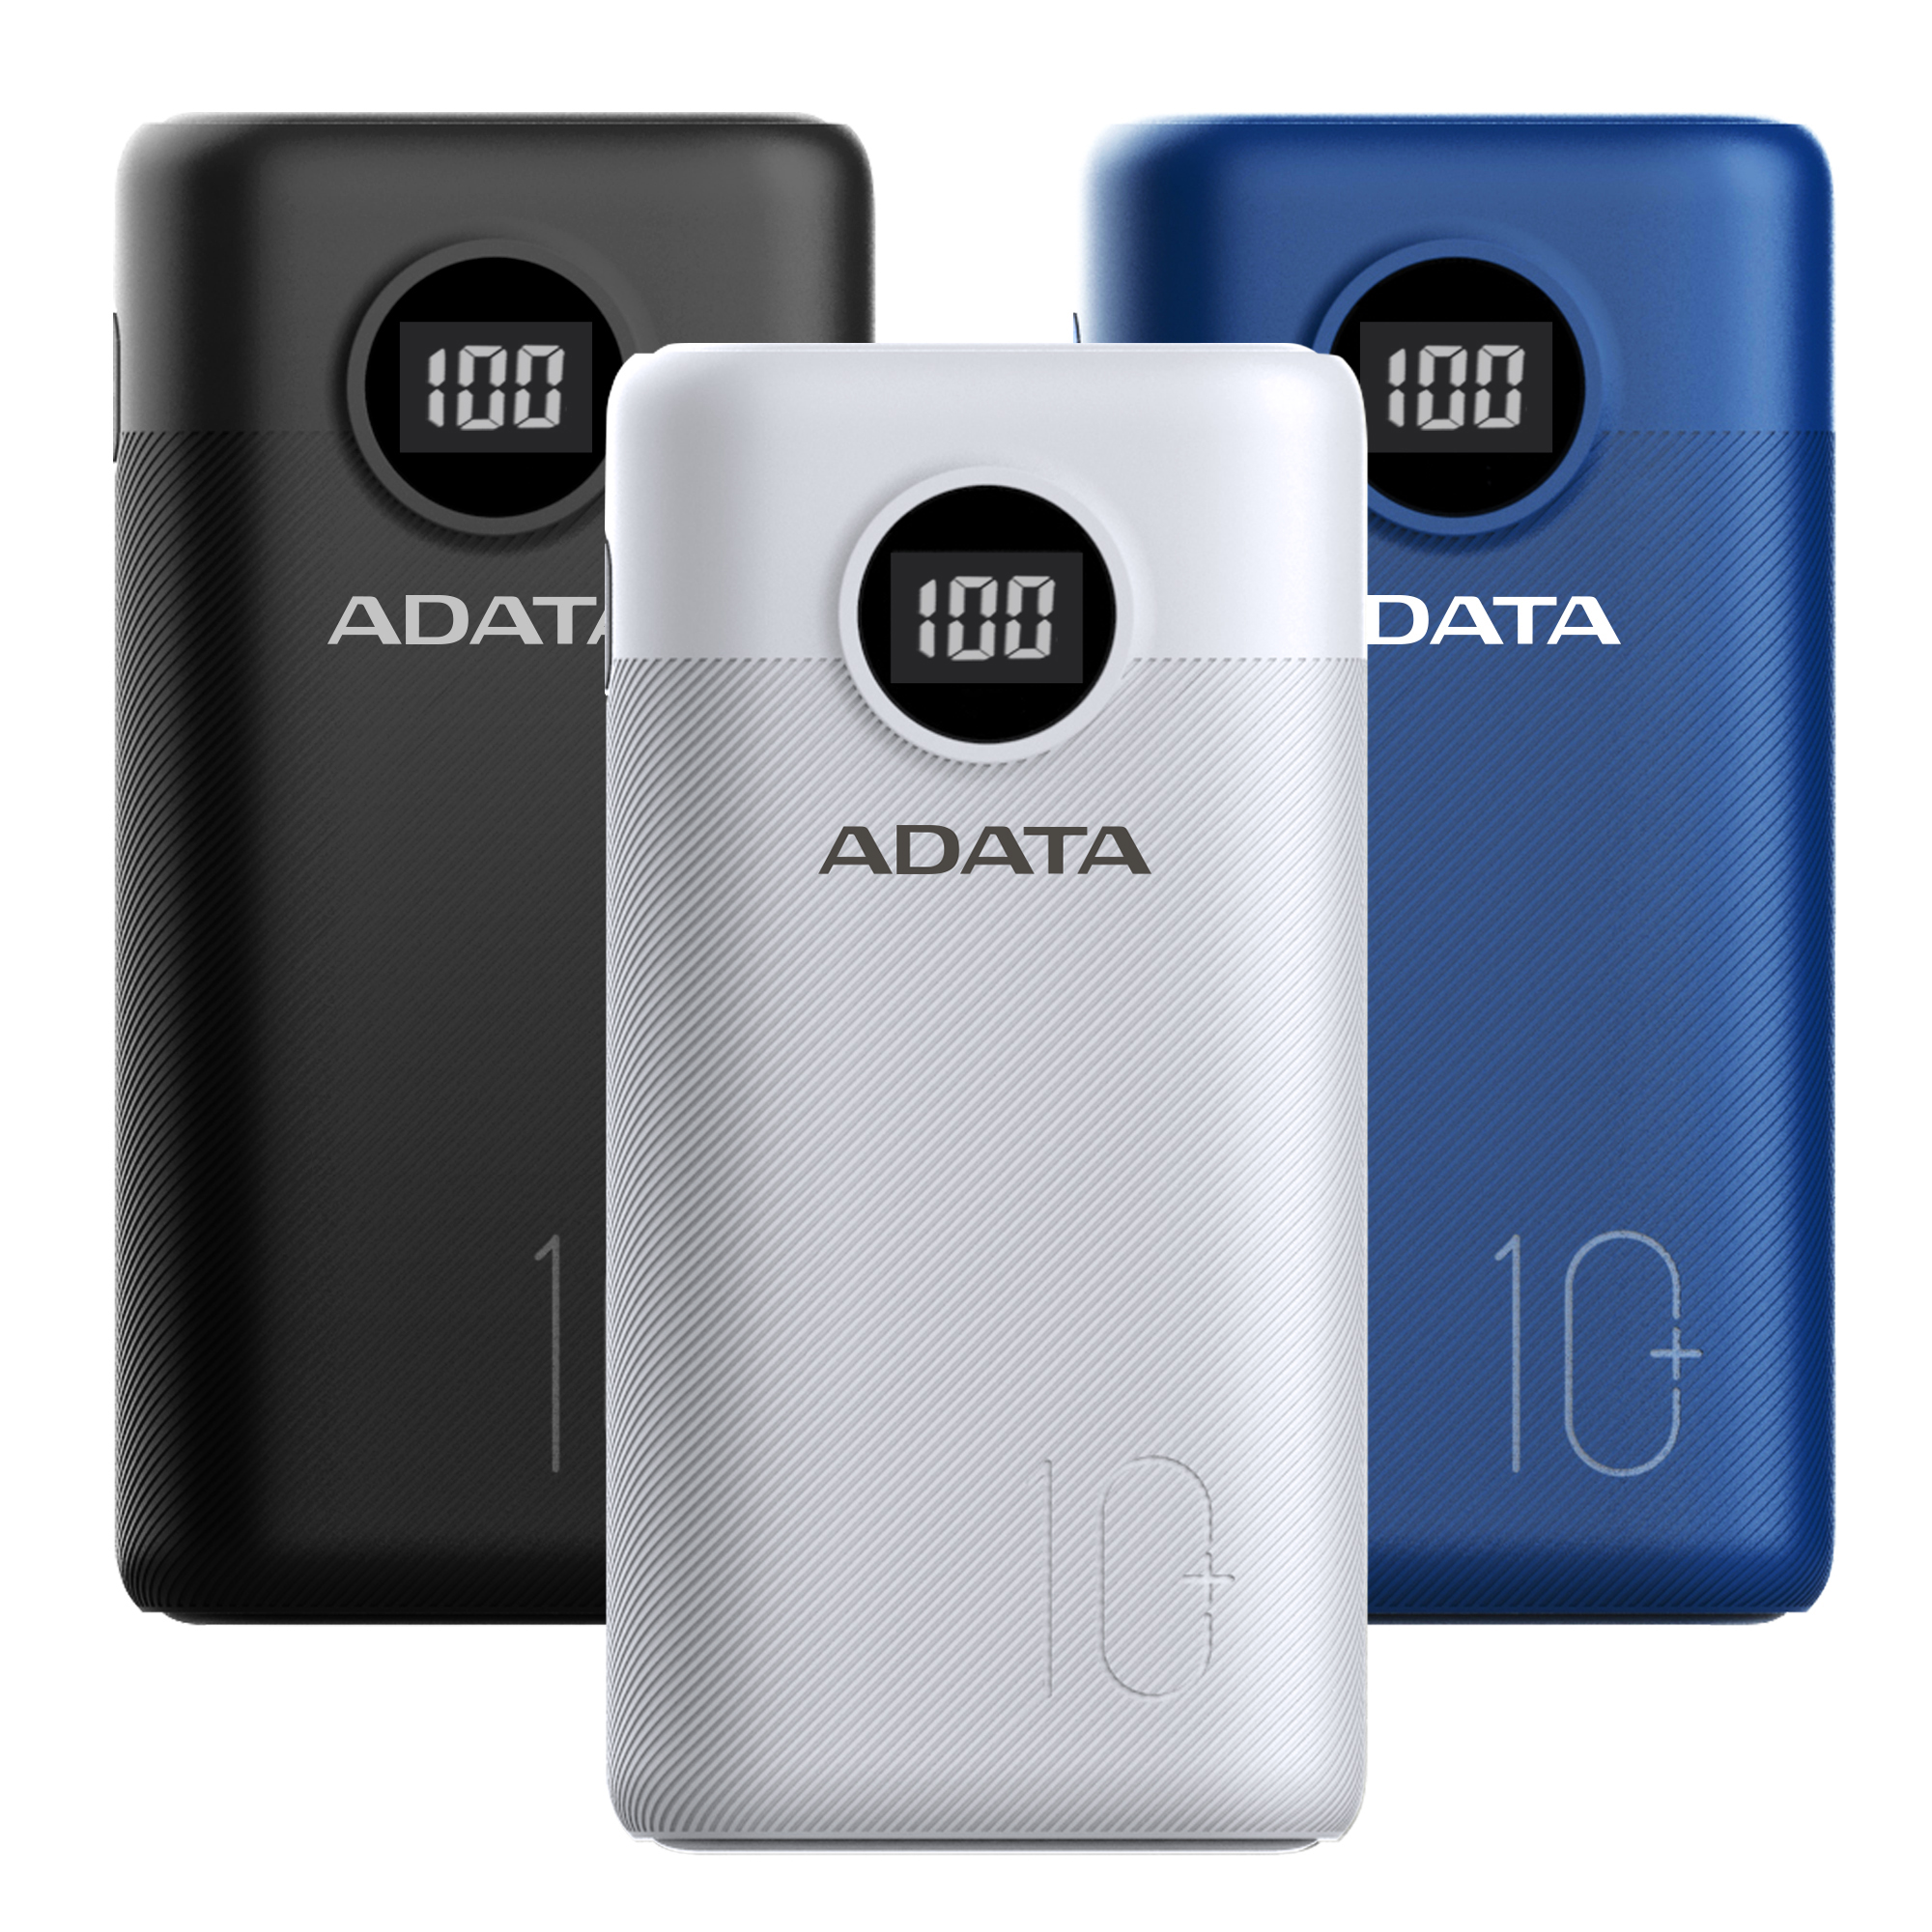 ADATA präsentiert mit P20000D und P12500D zwei mobile Kraftpakete